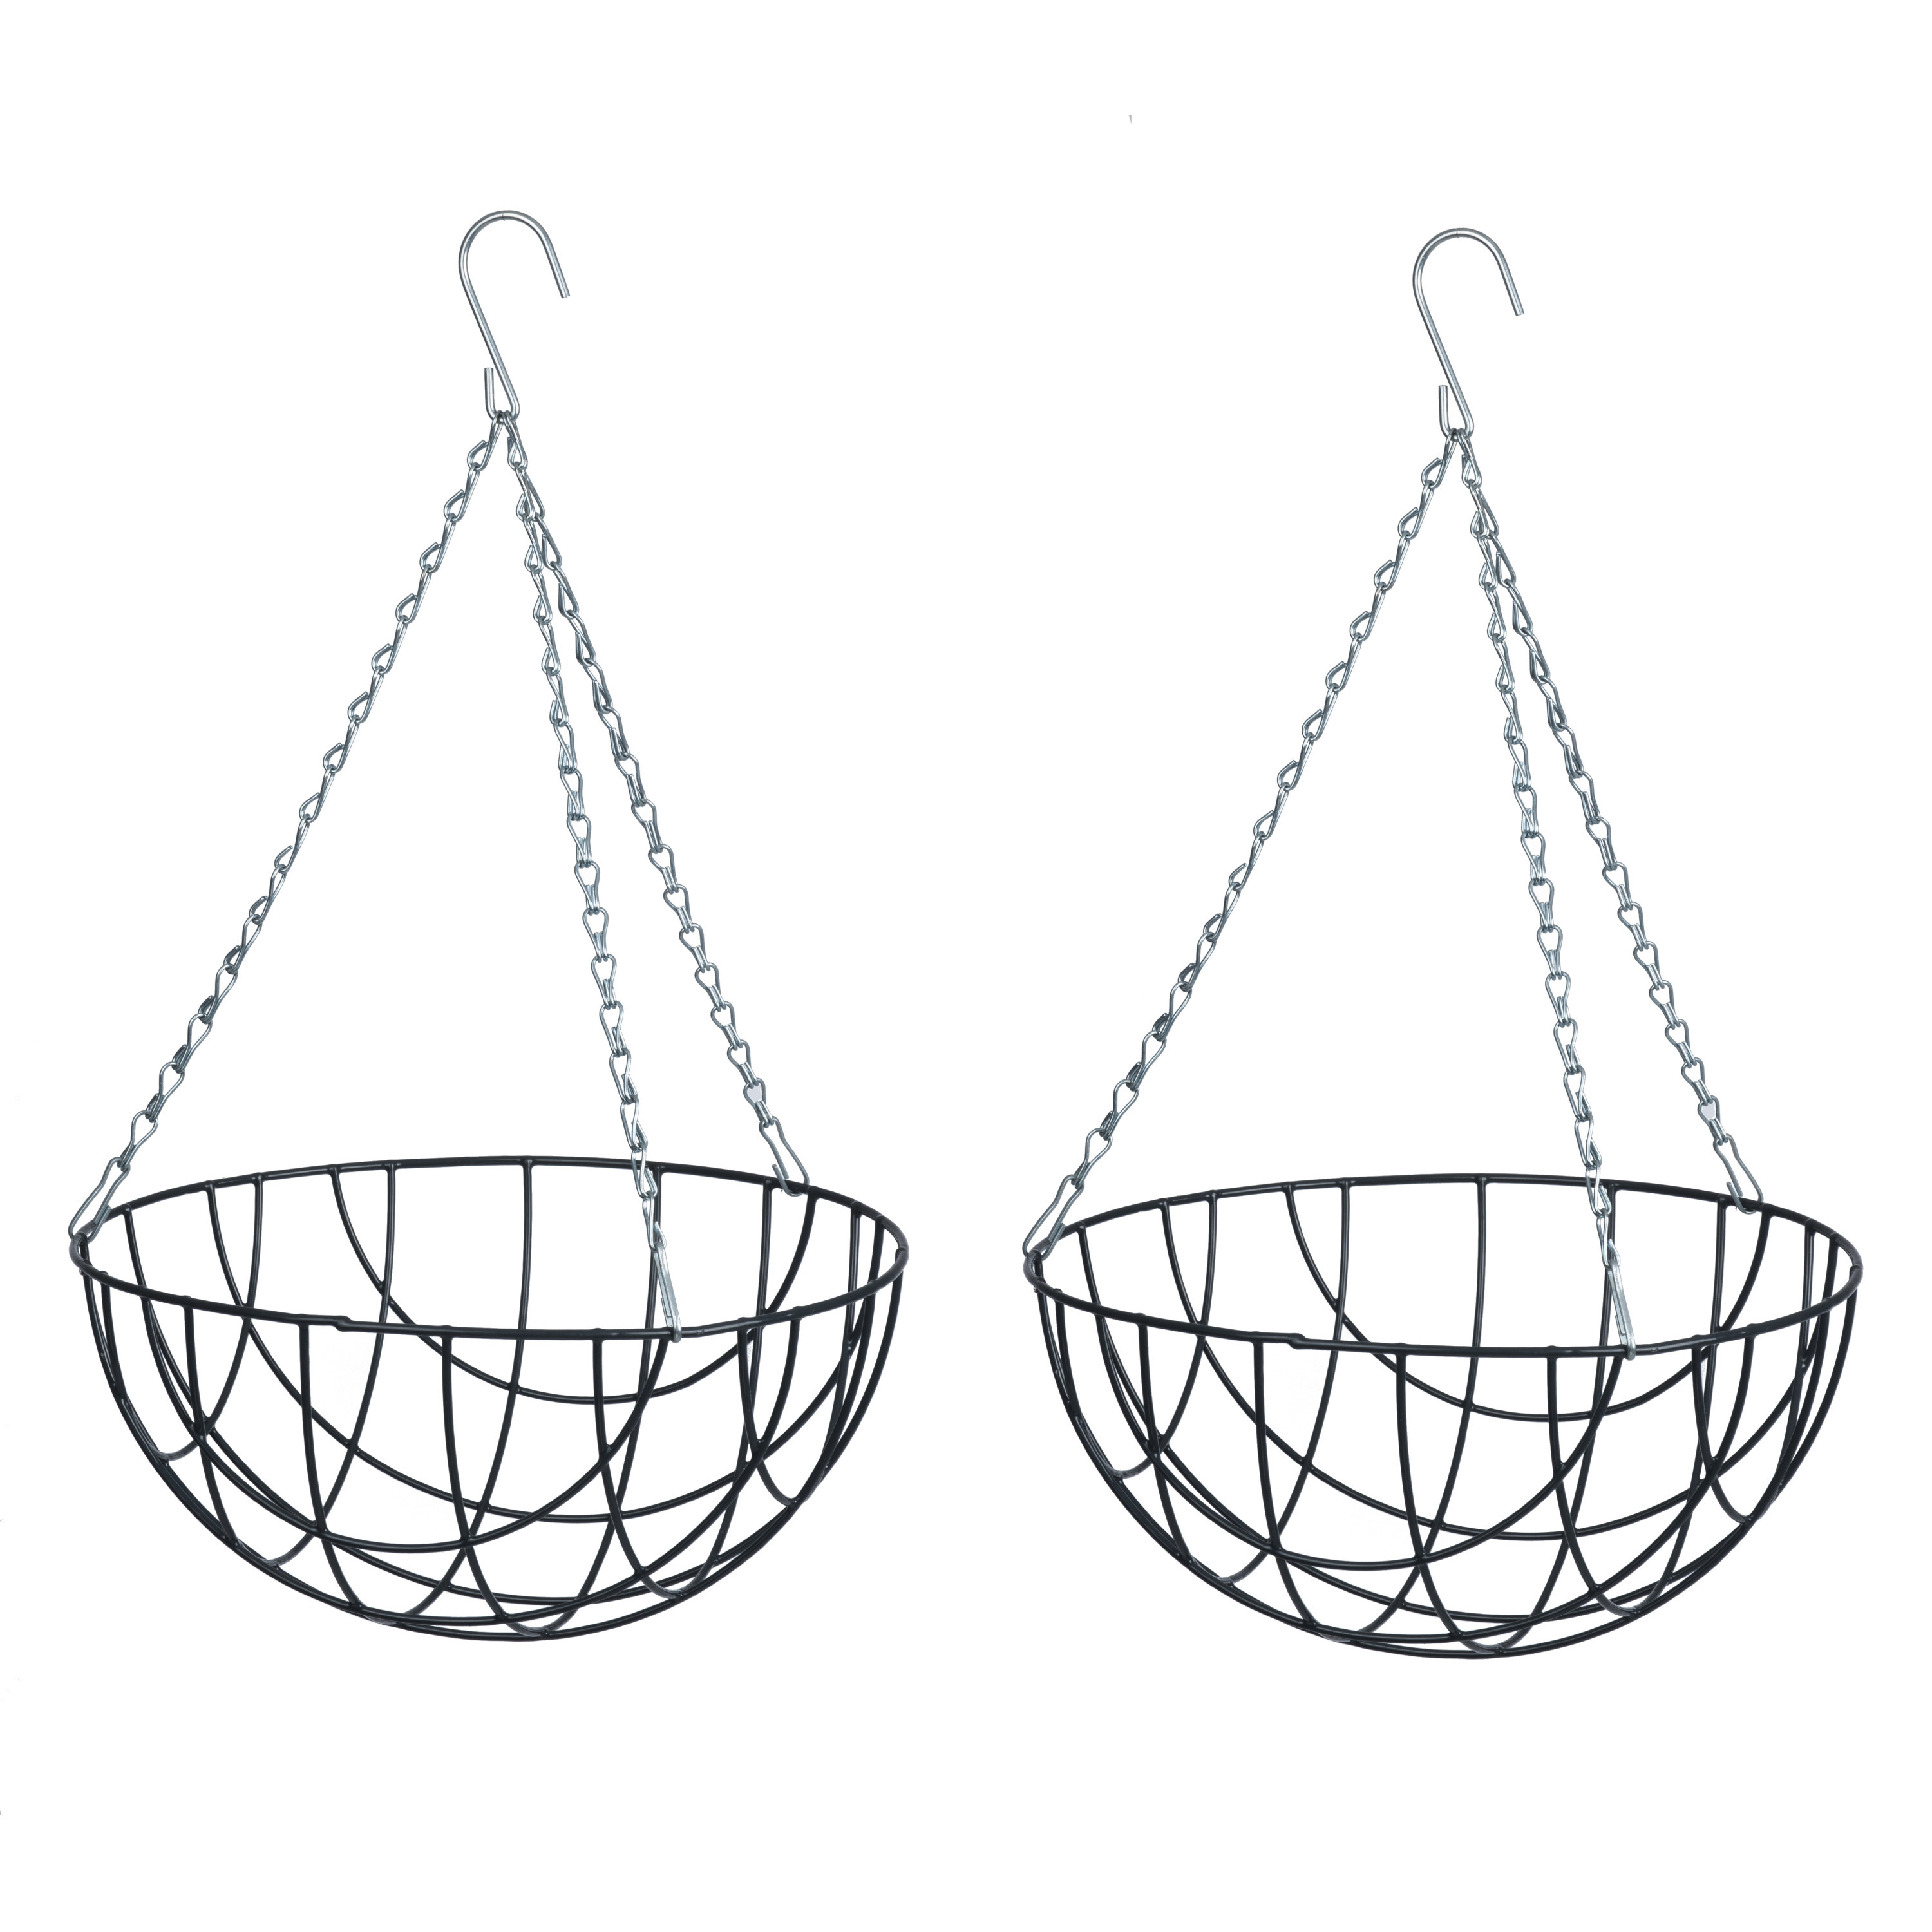 2x stuks hangende plantenbak metaaldraad donkergrijs met ketting H16 x D30 cm hanging basket